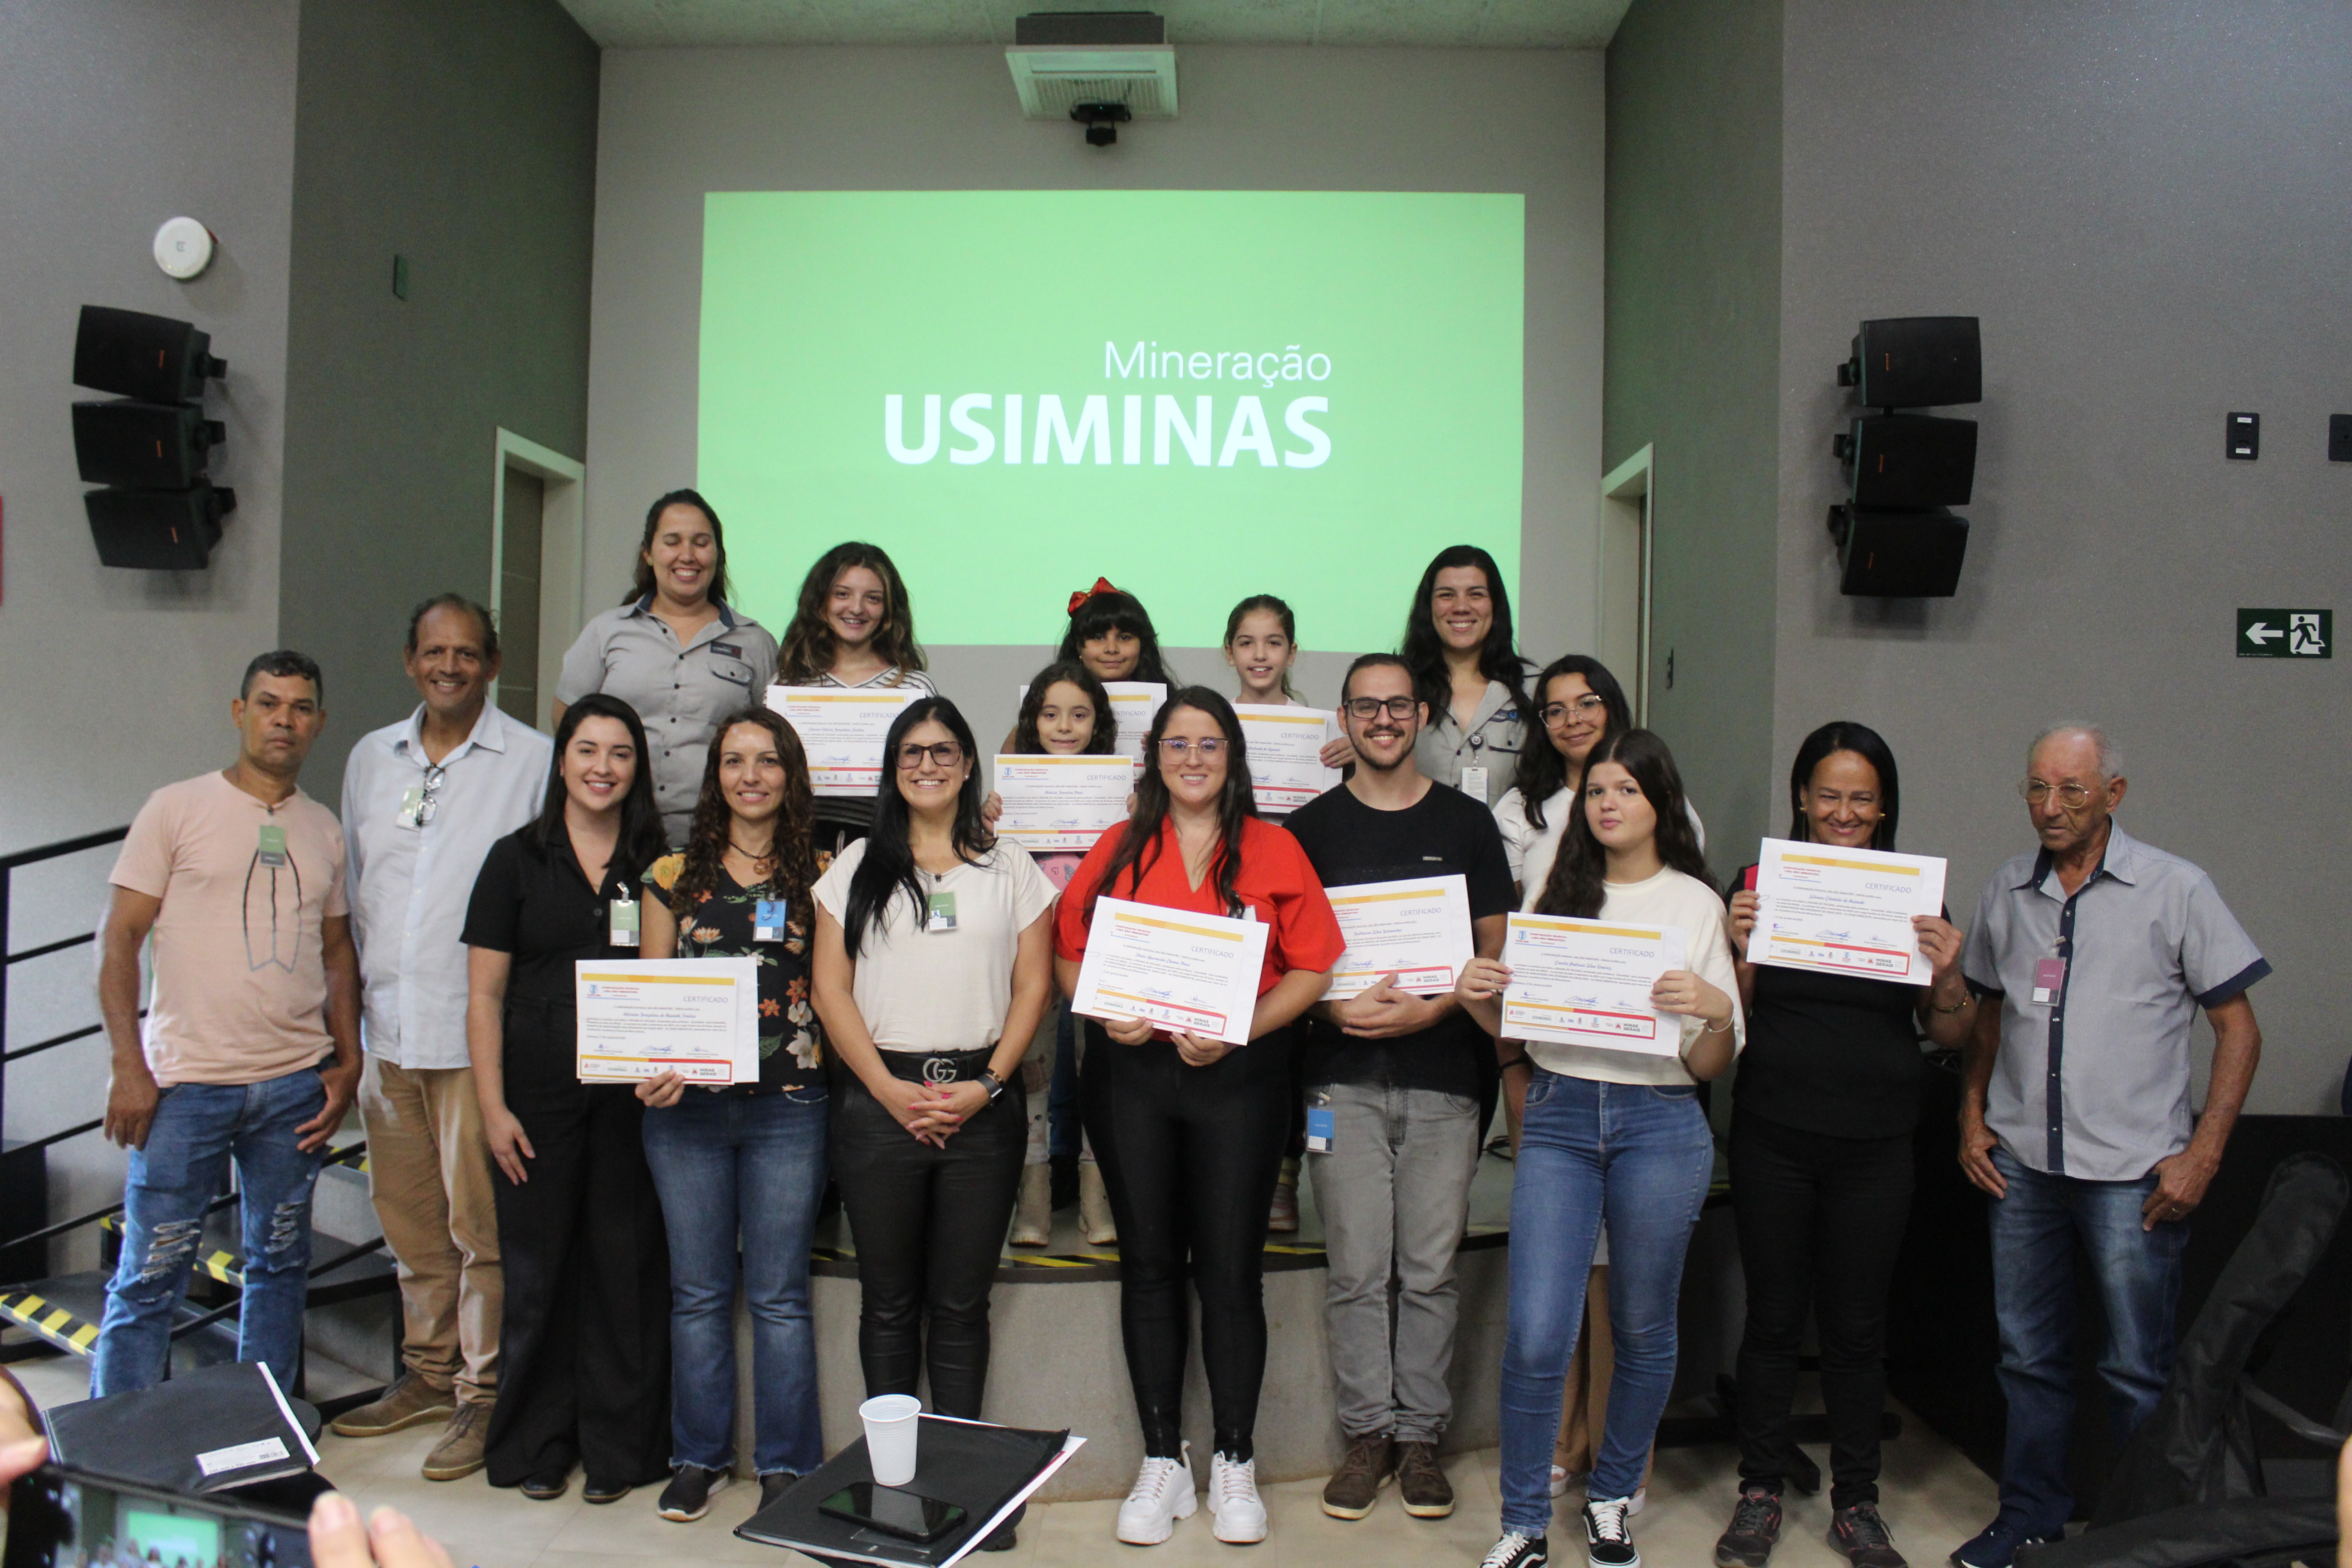 Em cerimônia realizada na sede da Mineração Usiminas, os participantes do projeto receberam o certificado de conclusão das atividades